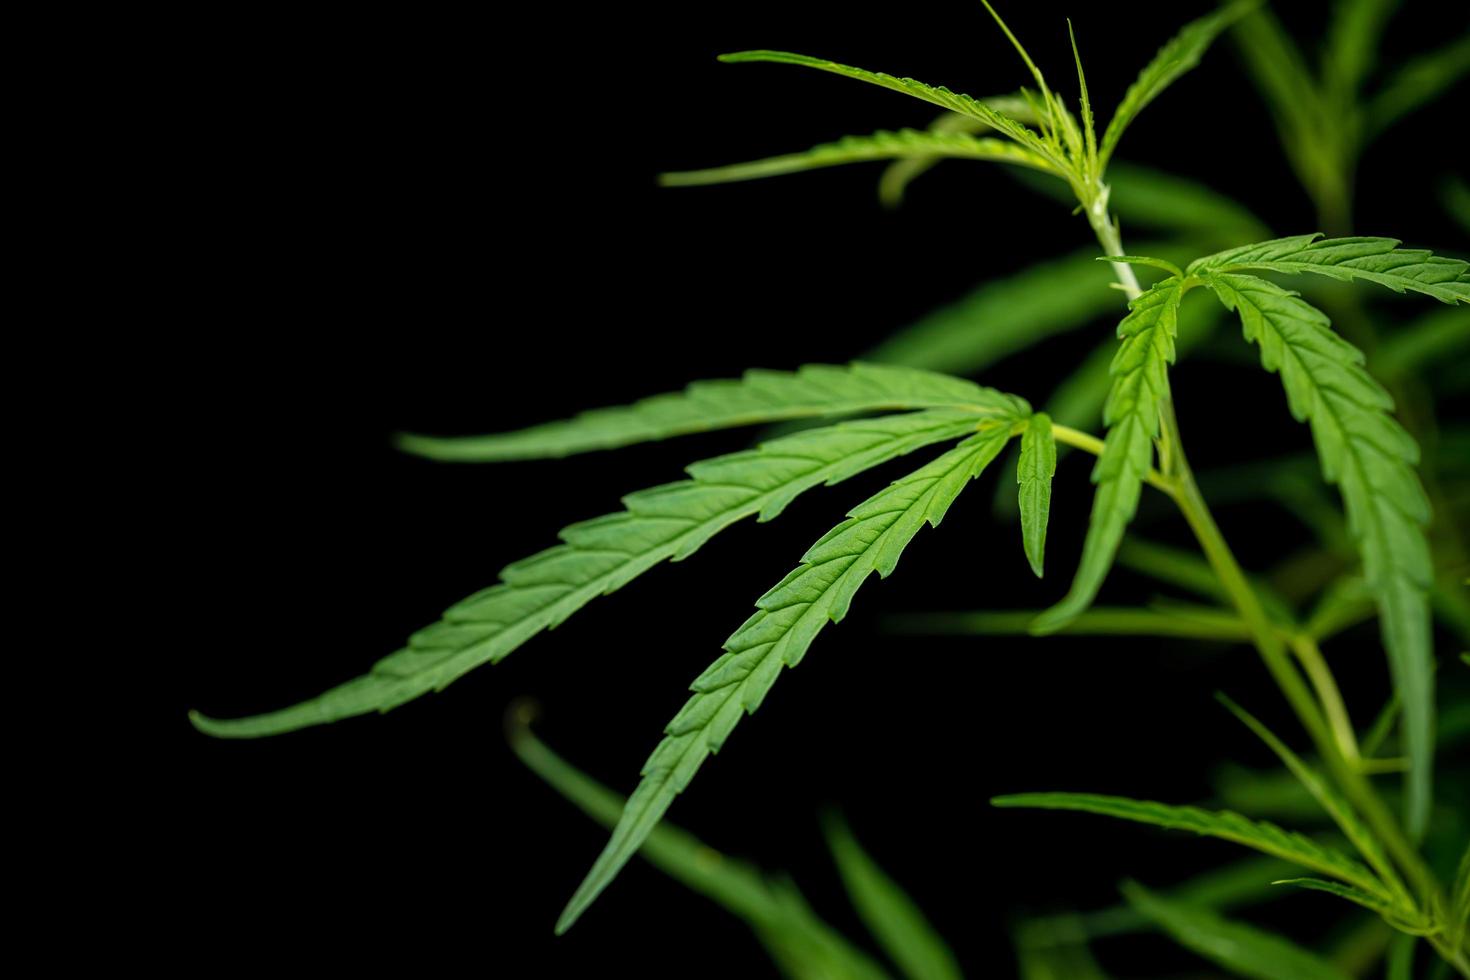 Blatt grün frisch von Marihuana-Baum auf schwarzem Hintergrund foto